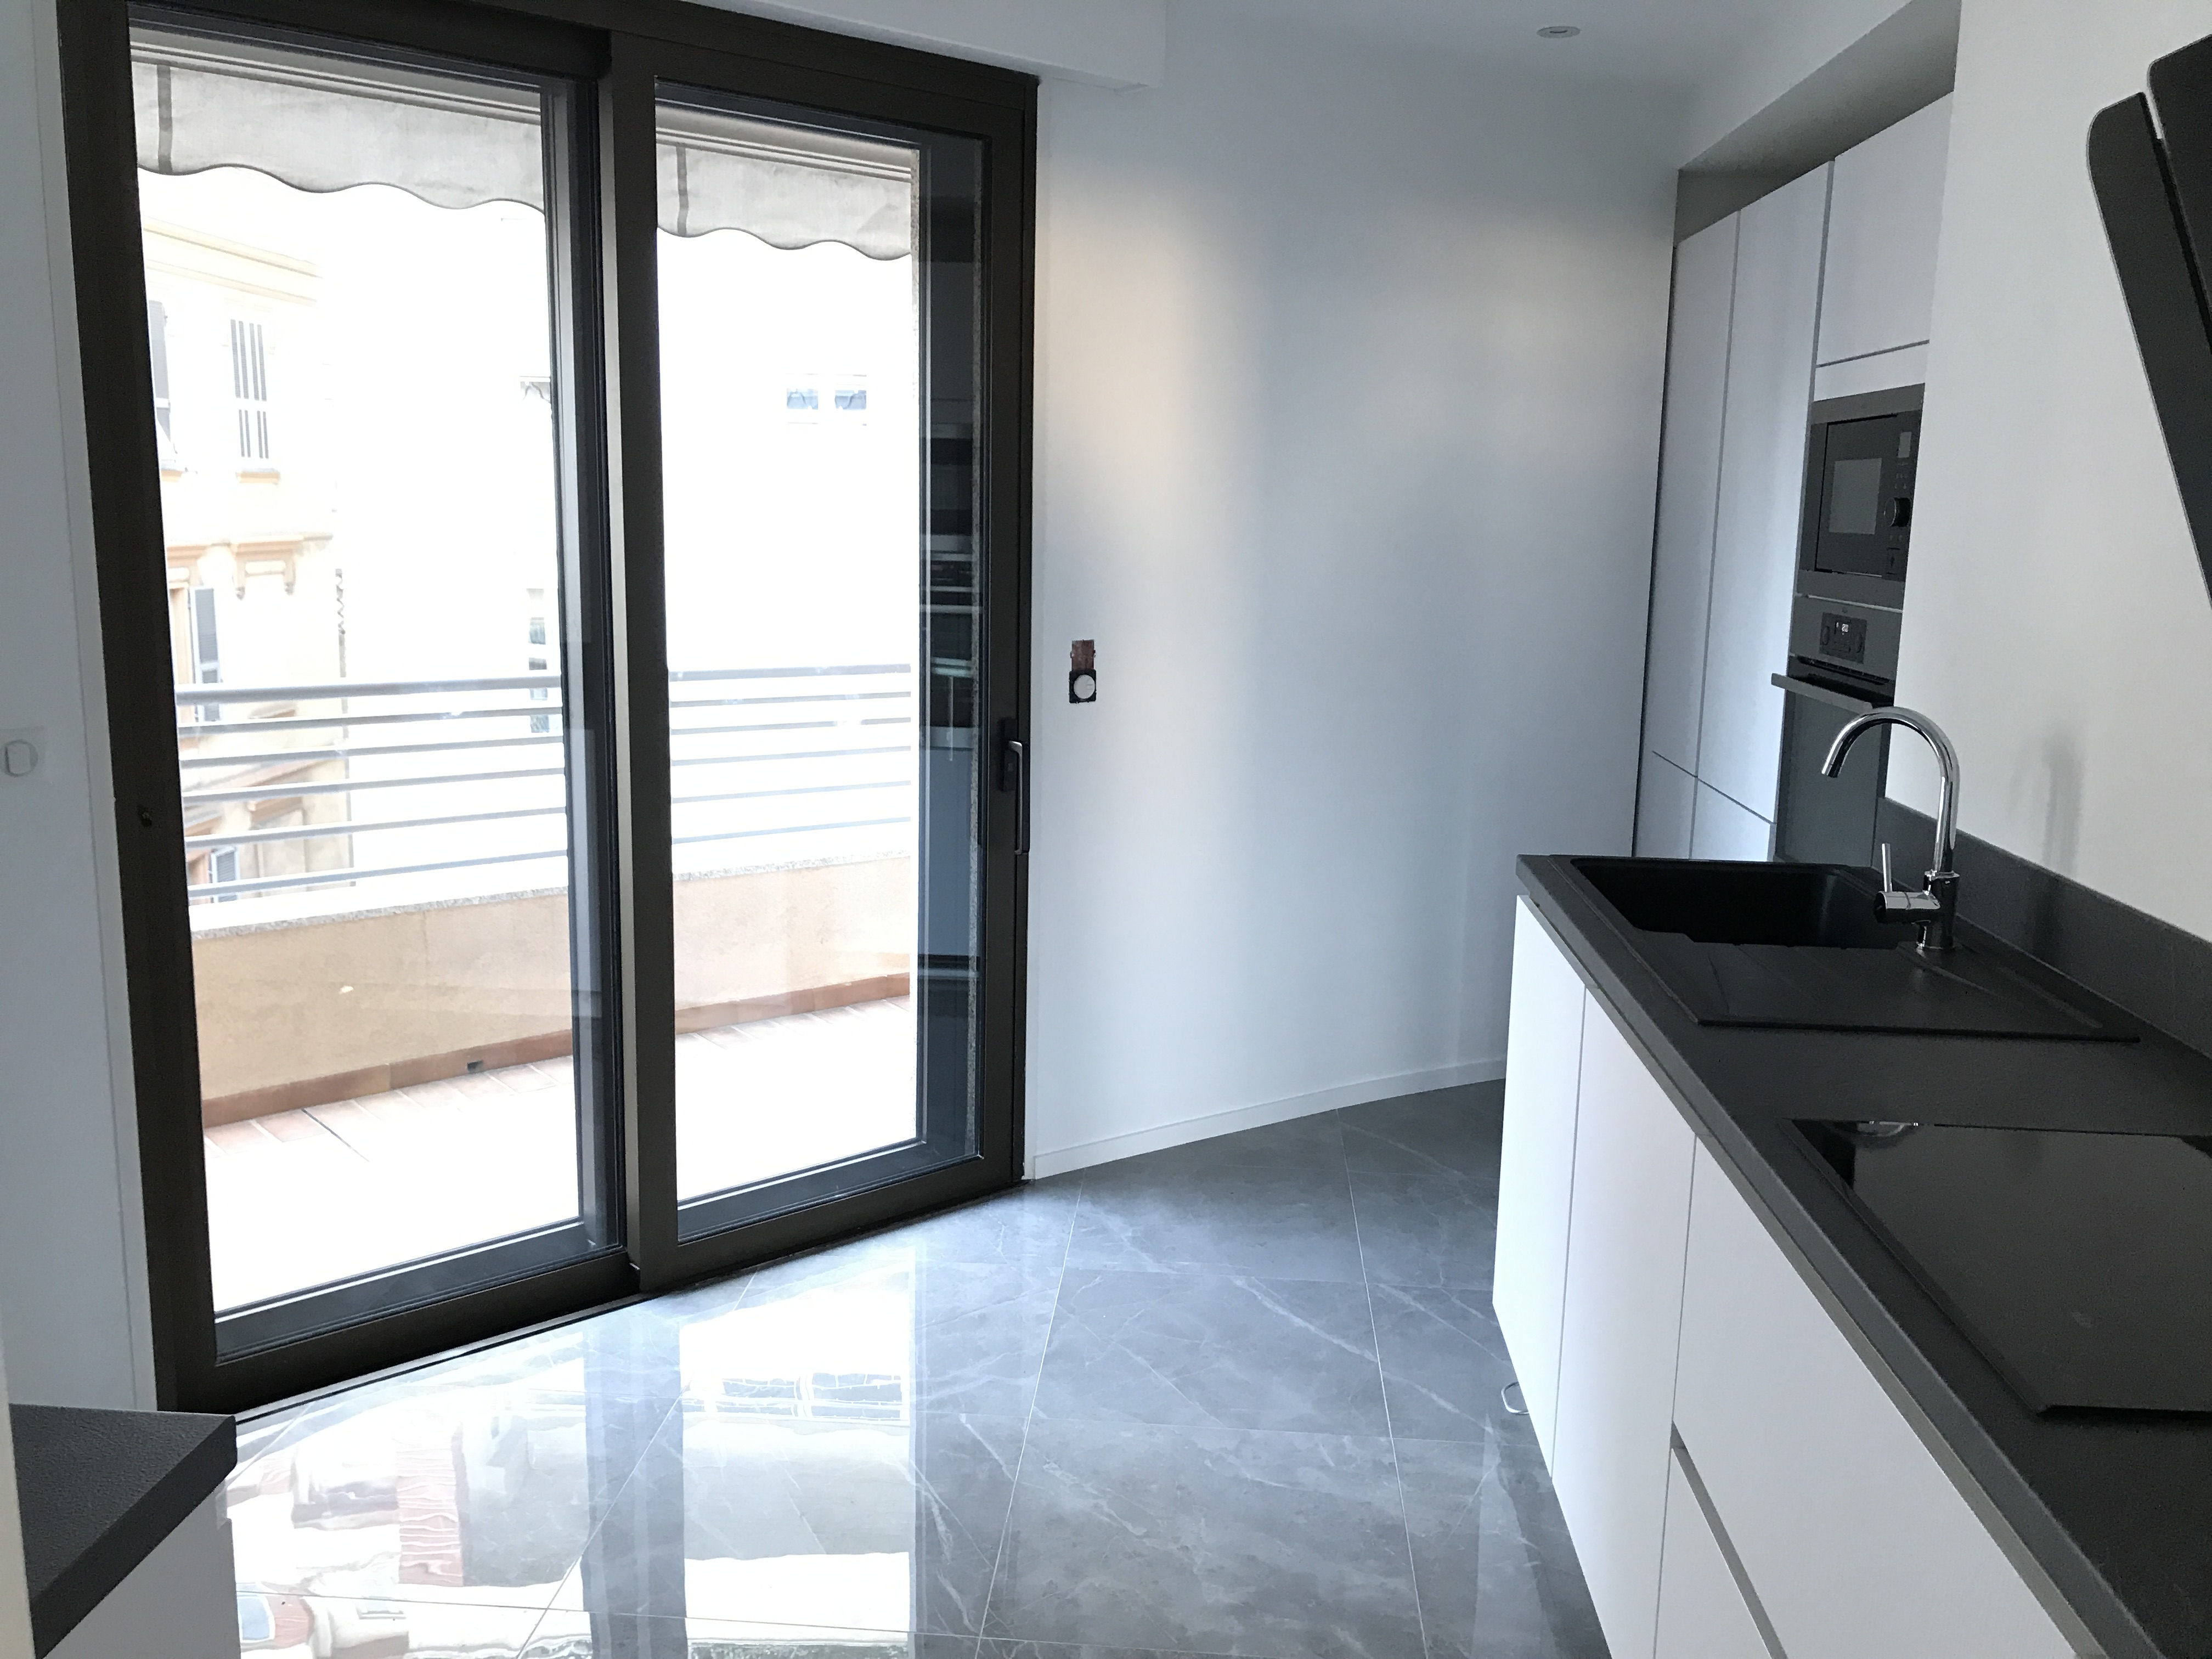 LA FELOUQUE MONACO - Rénovation complète d’un appartement de 70 m2 - Avril - Mai 2017